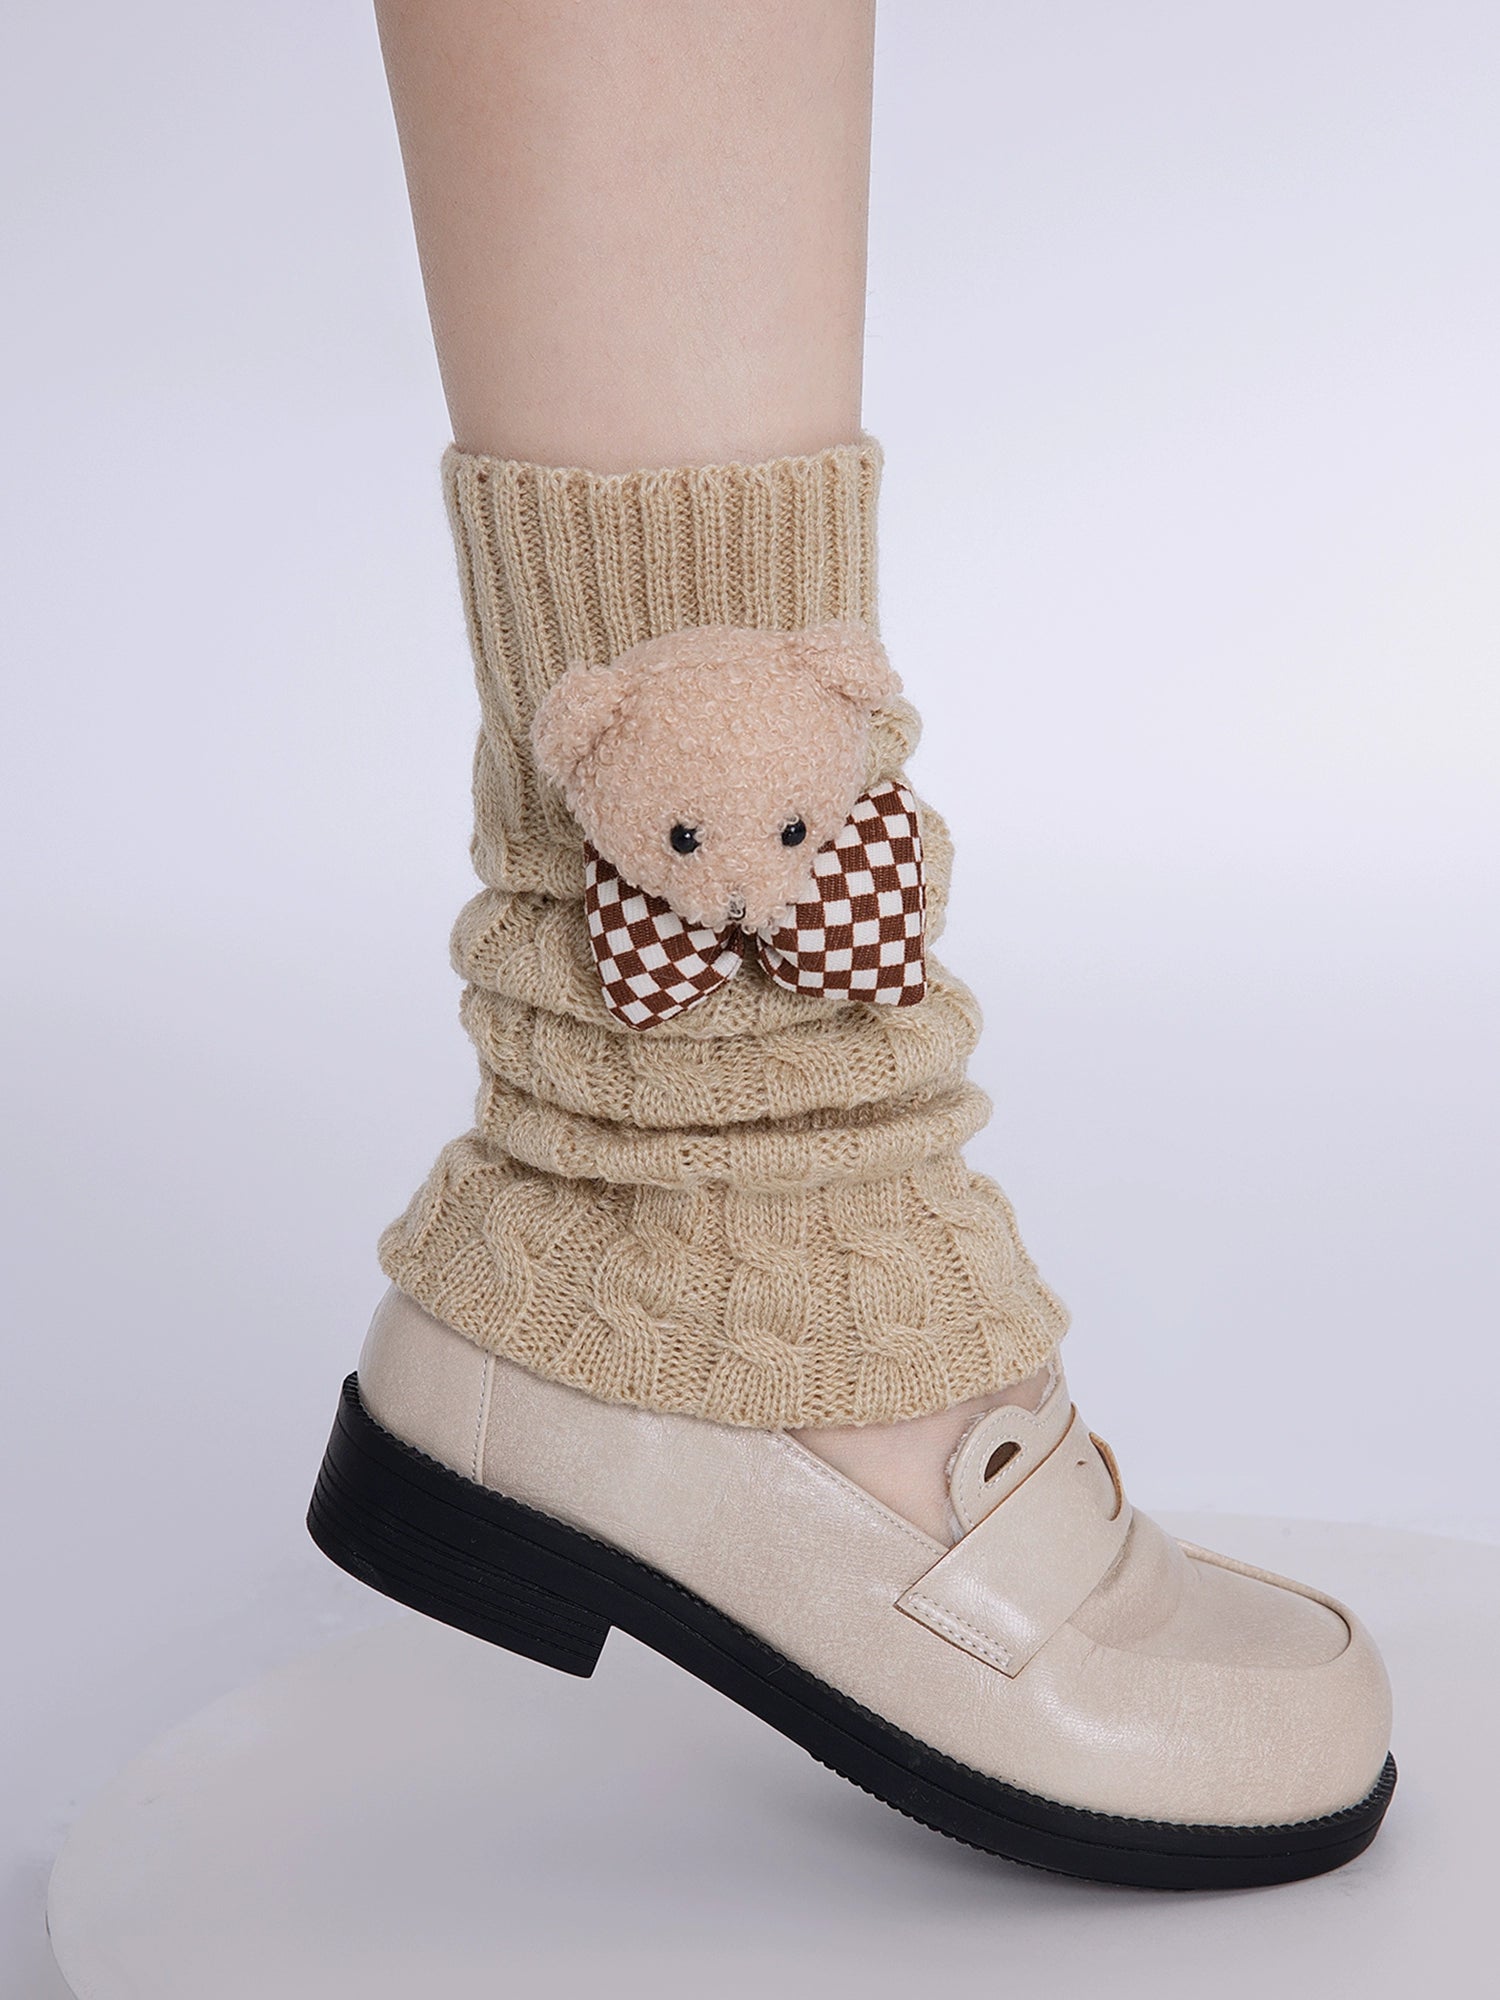 Tokyo Teddy JK Uniform Leg Warmers-ntbhshop